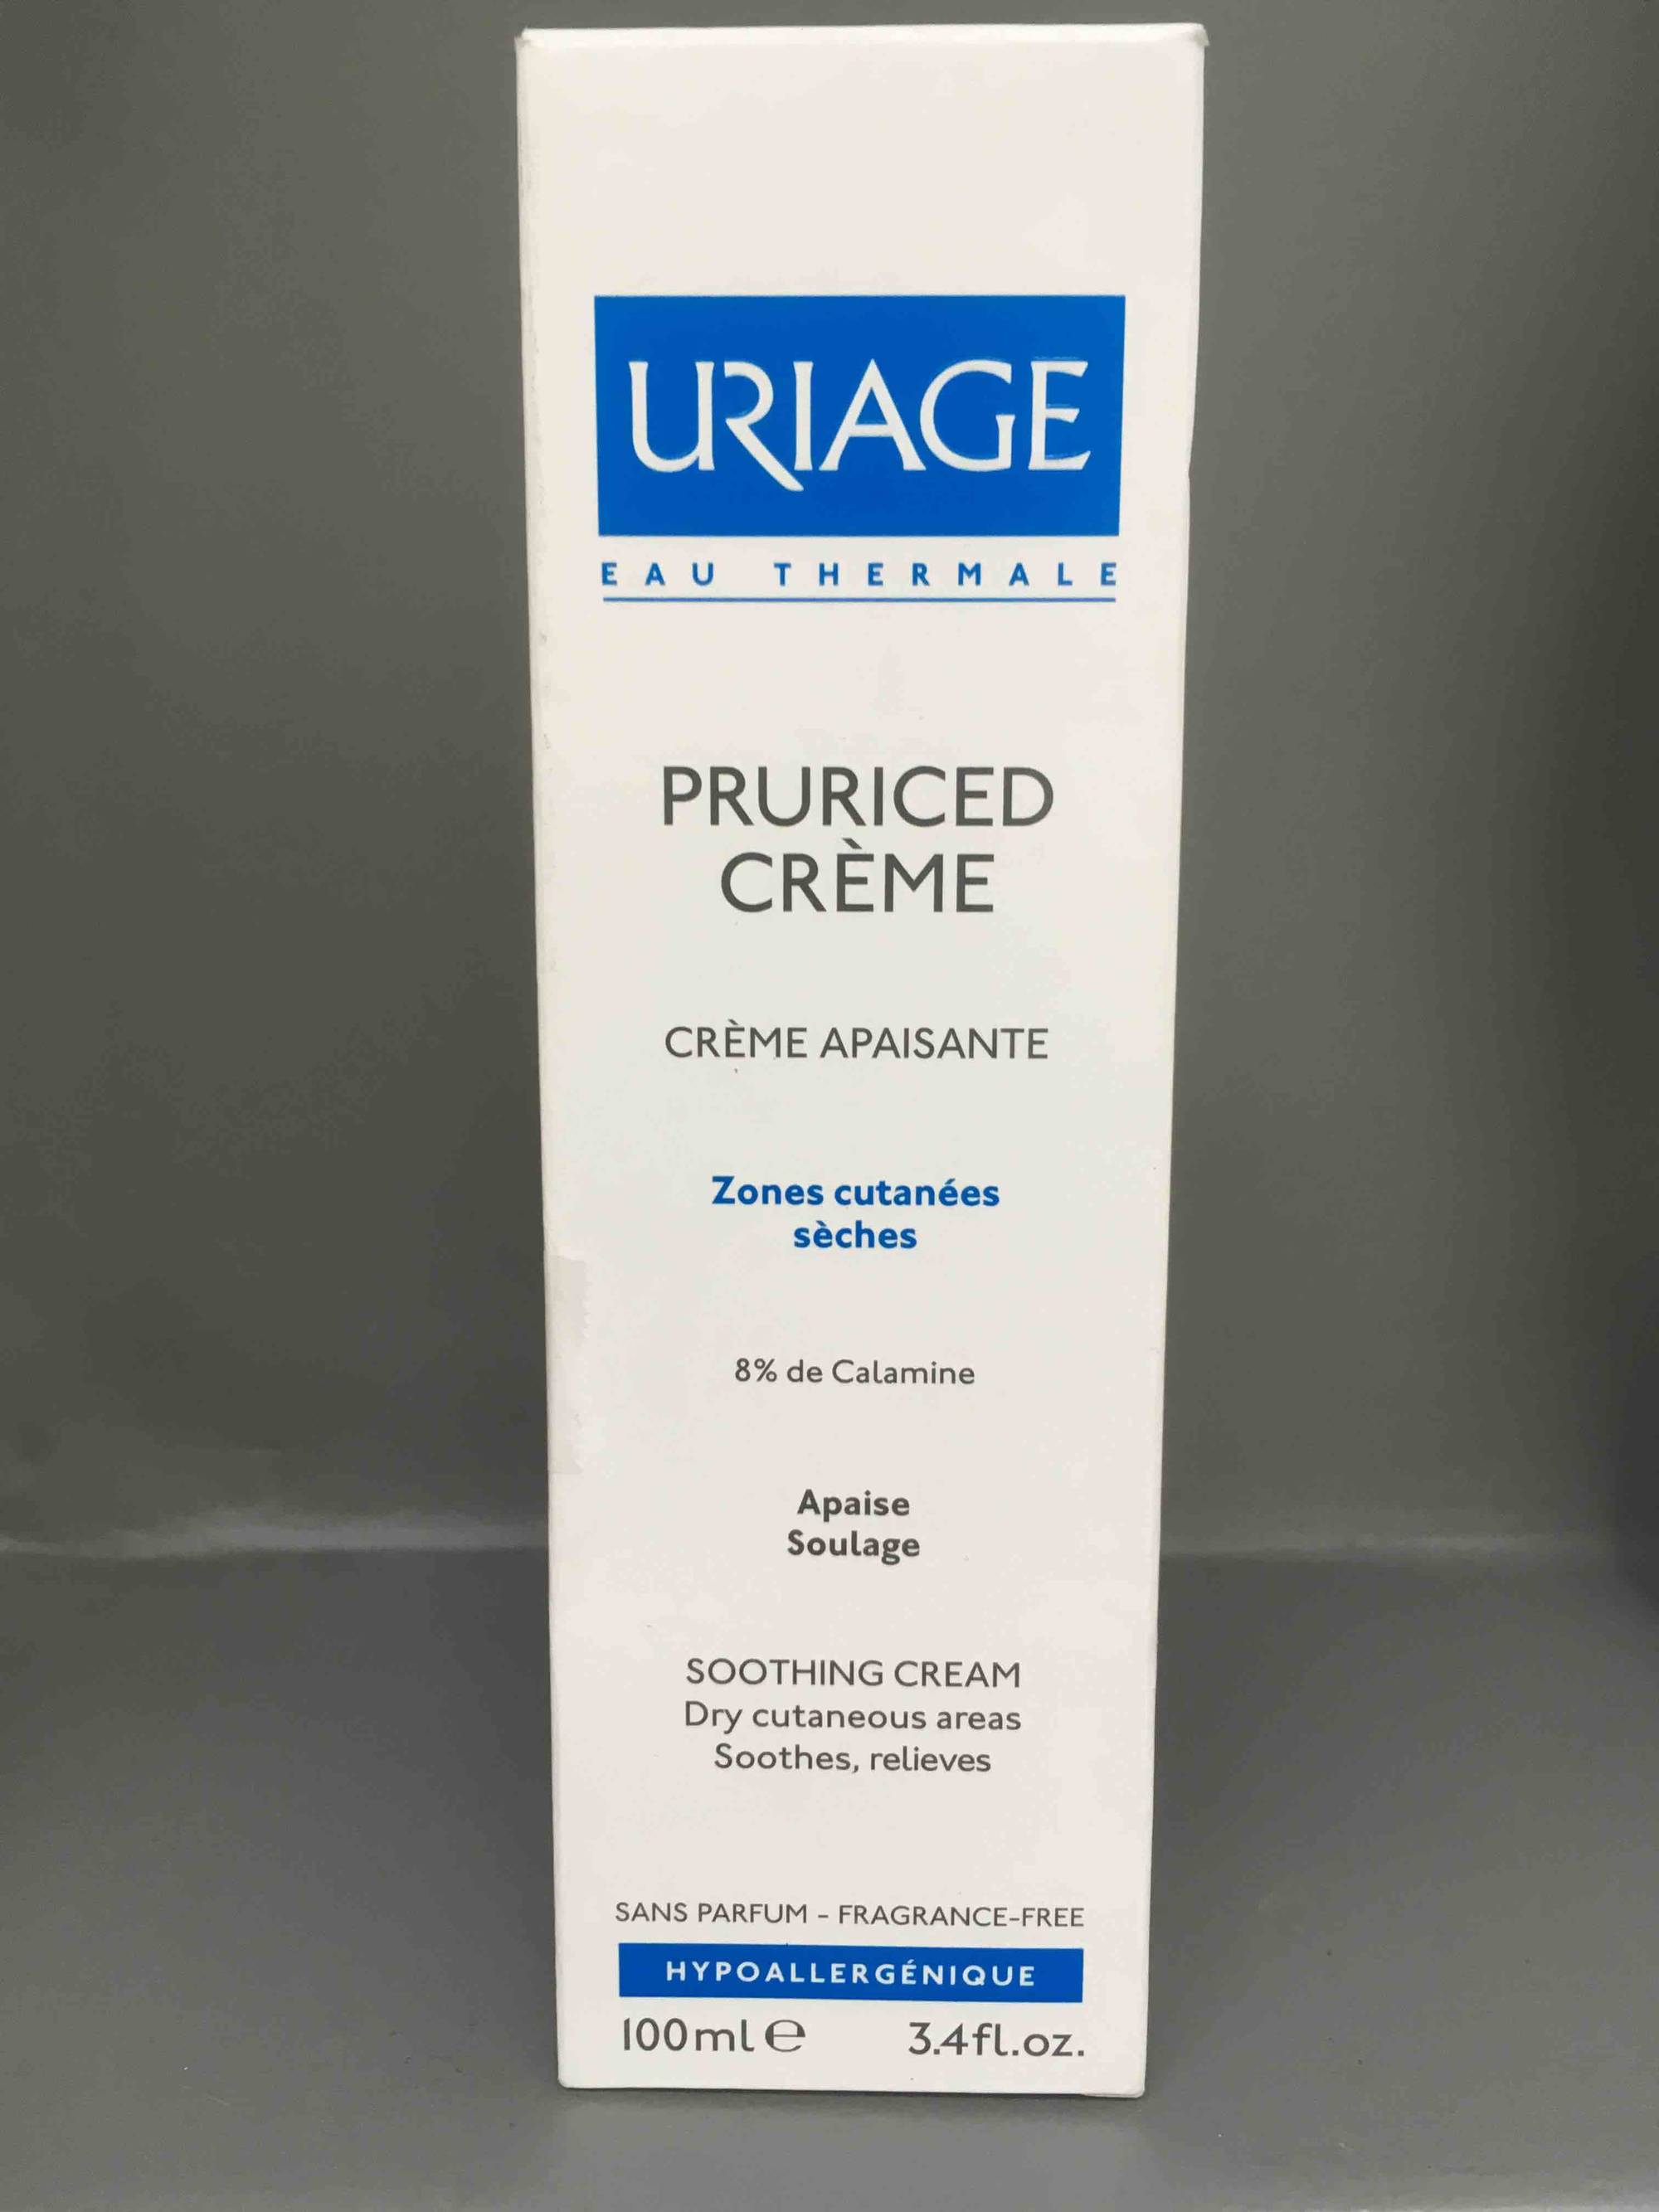 URIAGE - Pruriced crème